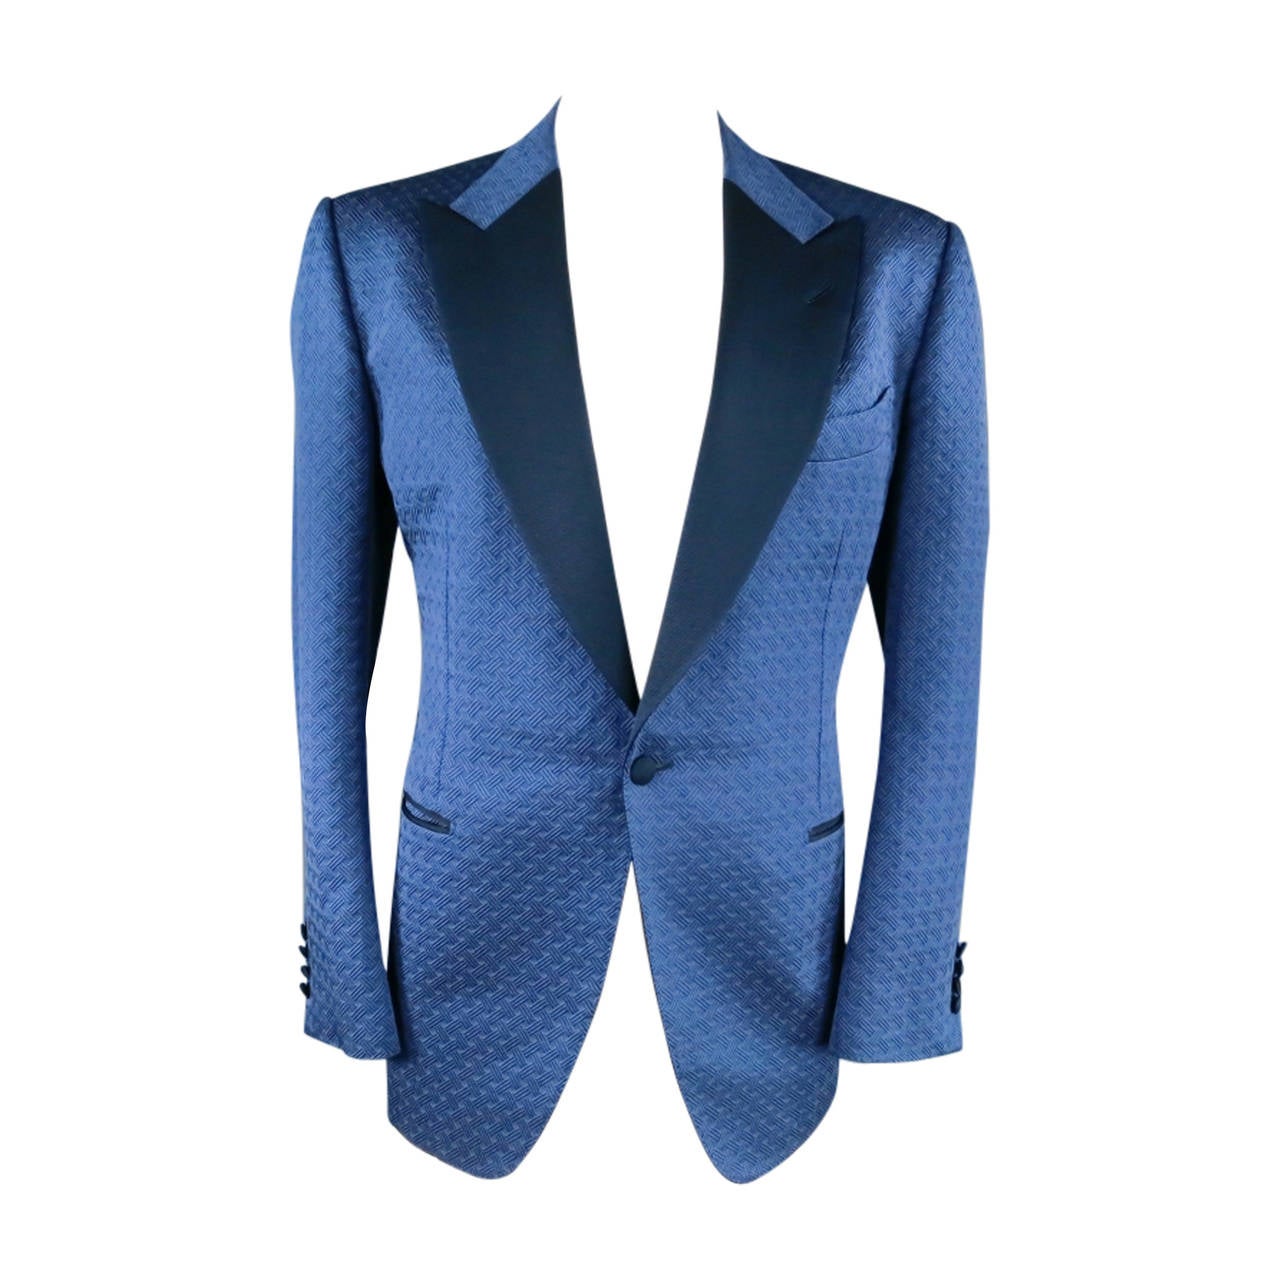 TOM FORD 44 R Navy Blue Woven Textured Print Sport Coat Dinner Tuxedo Jacket